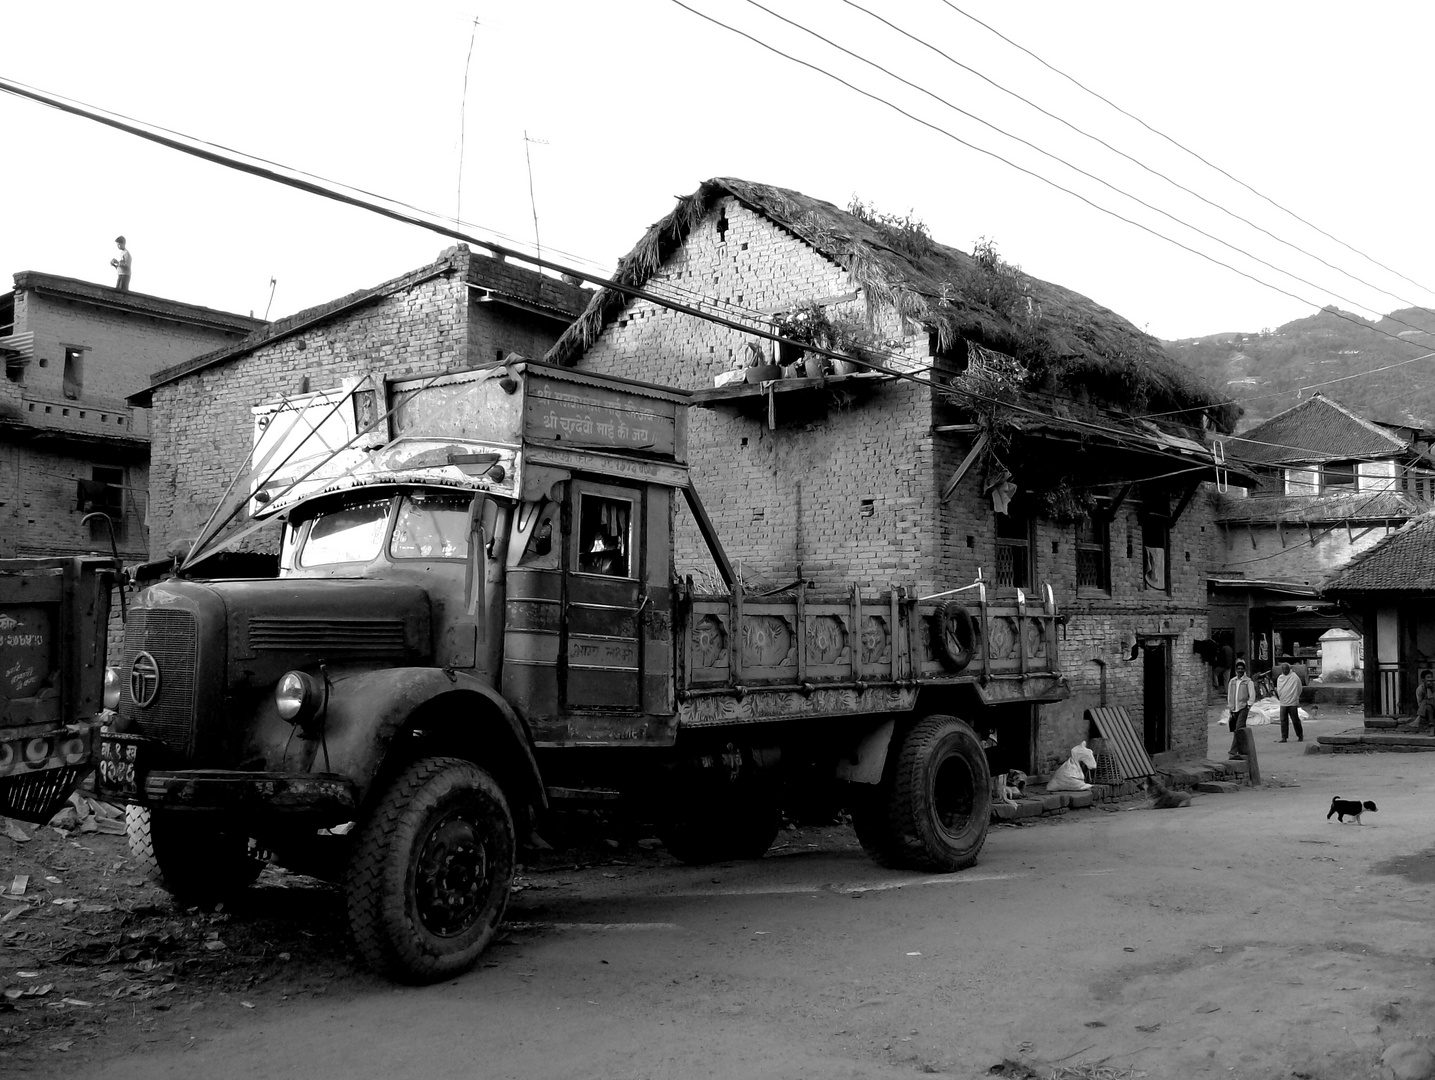 ramshackle old vehicle in Sankhu/ Kathmandu